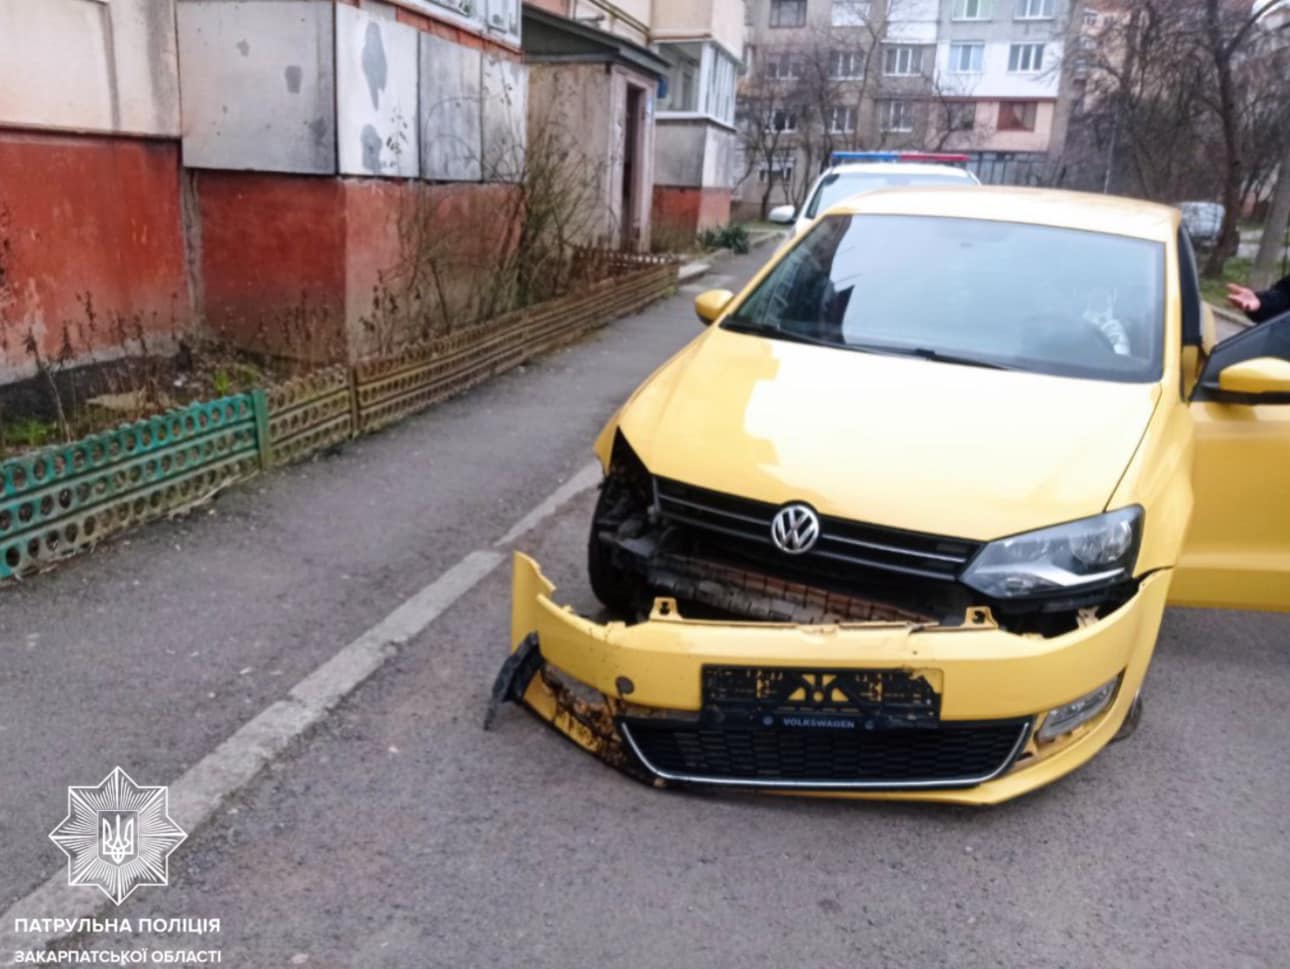 Вчора близько 18-ї години інспекторам надійшов виклик про ДТП зі зниклим на вулиці Росвигівській, в Мукачеві.